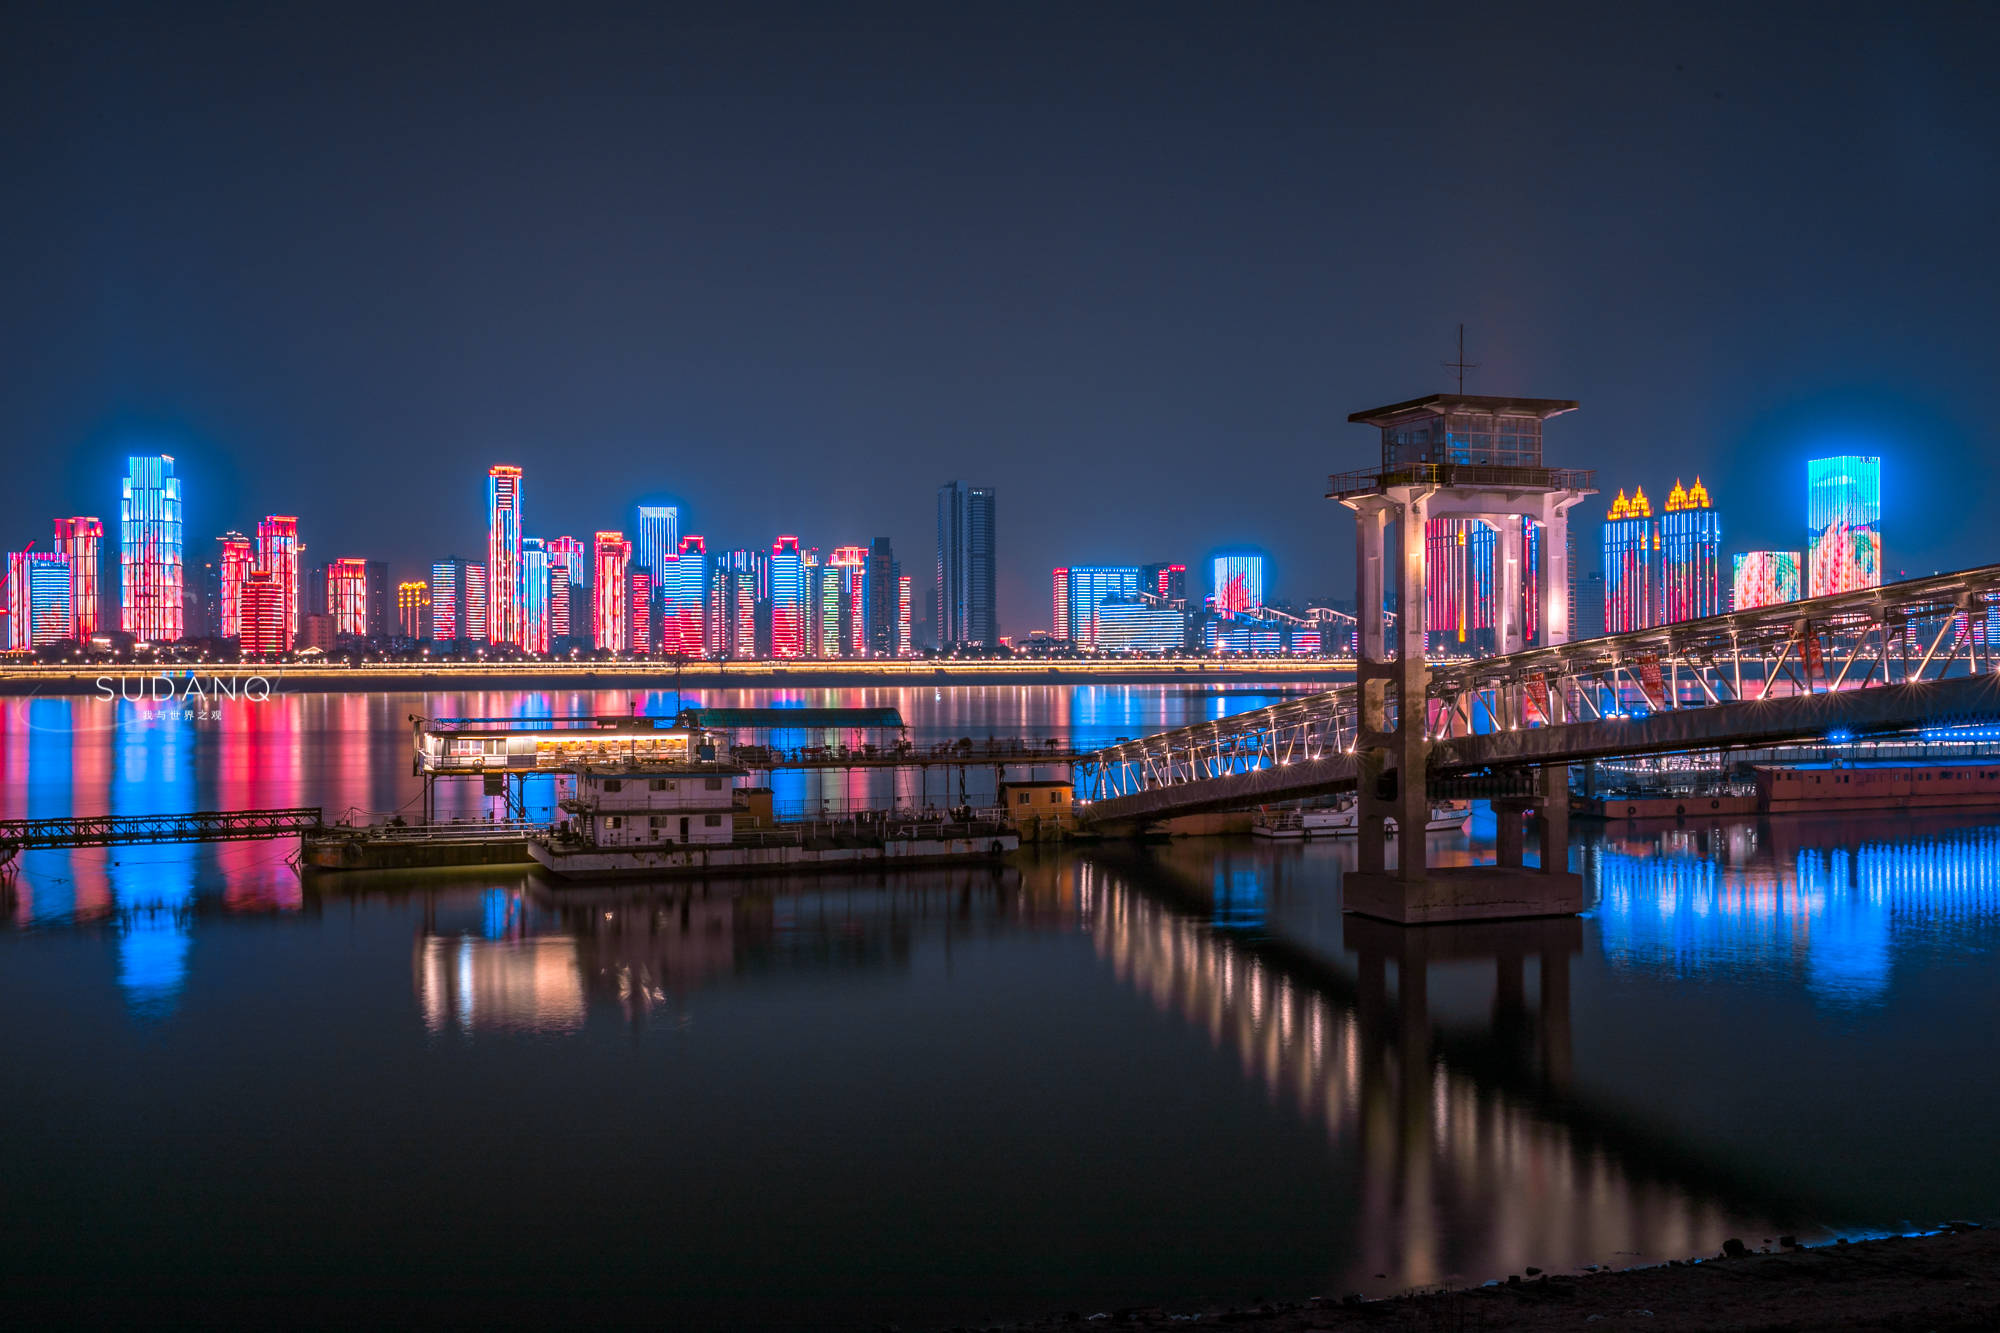 武汉夜色称得上是独一无二:汉口江滩璀璨夺目,有历史有风光